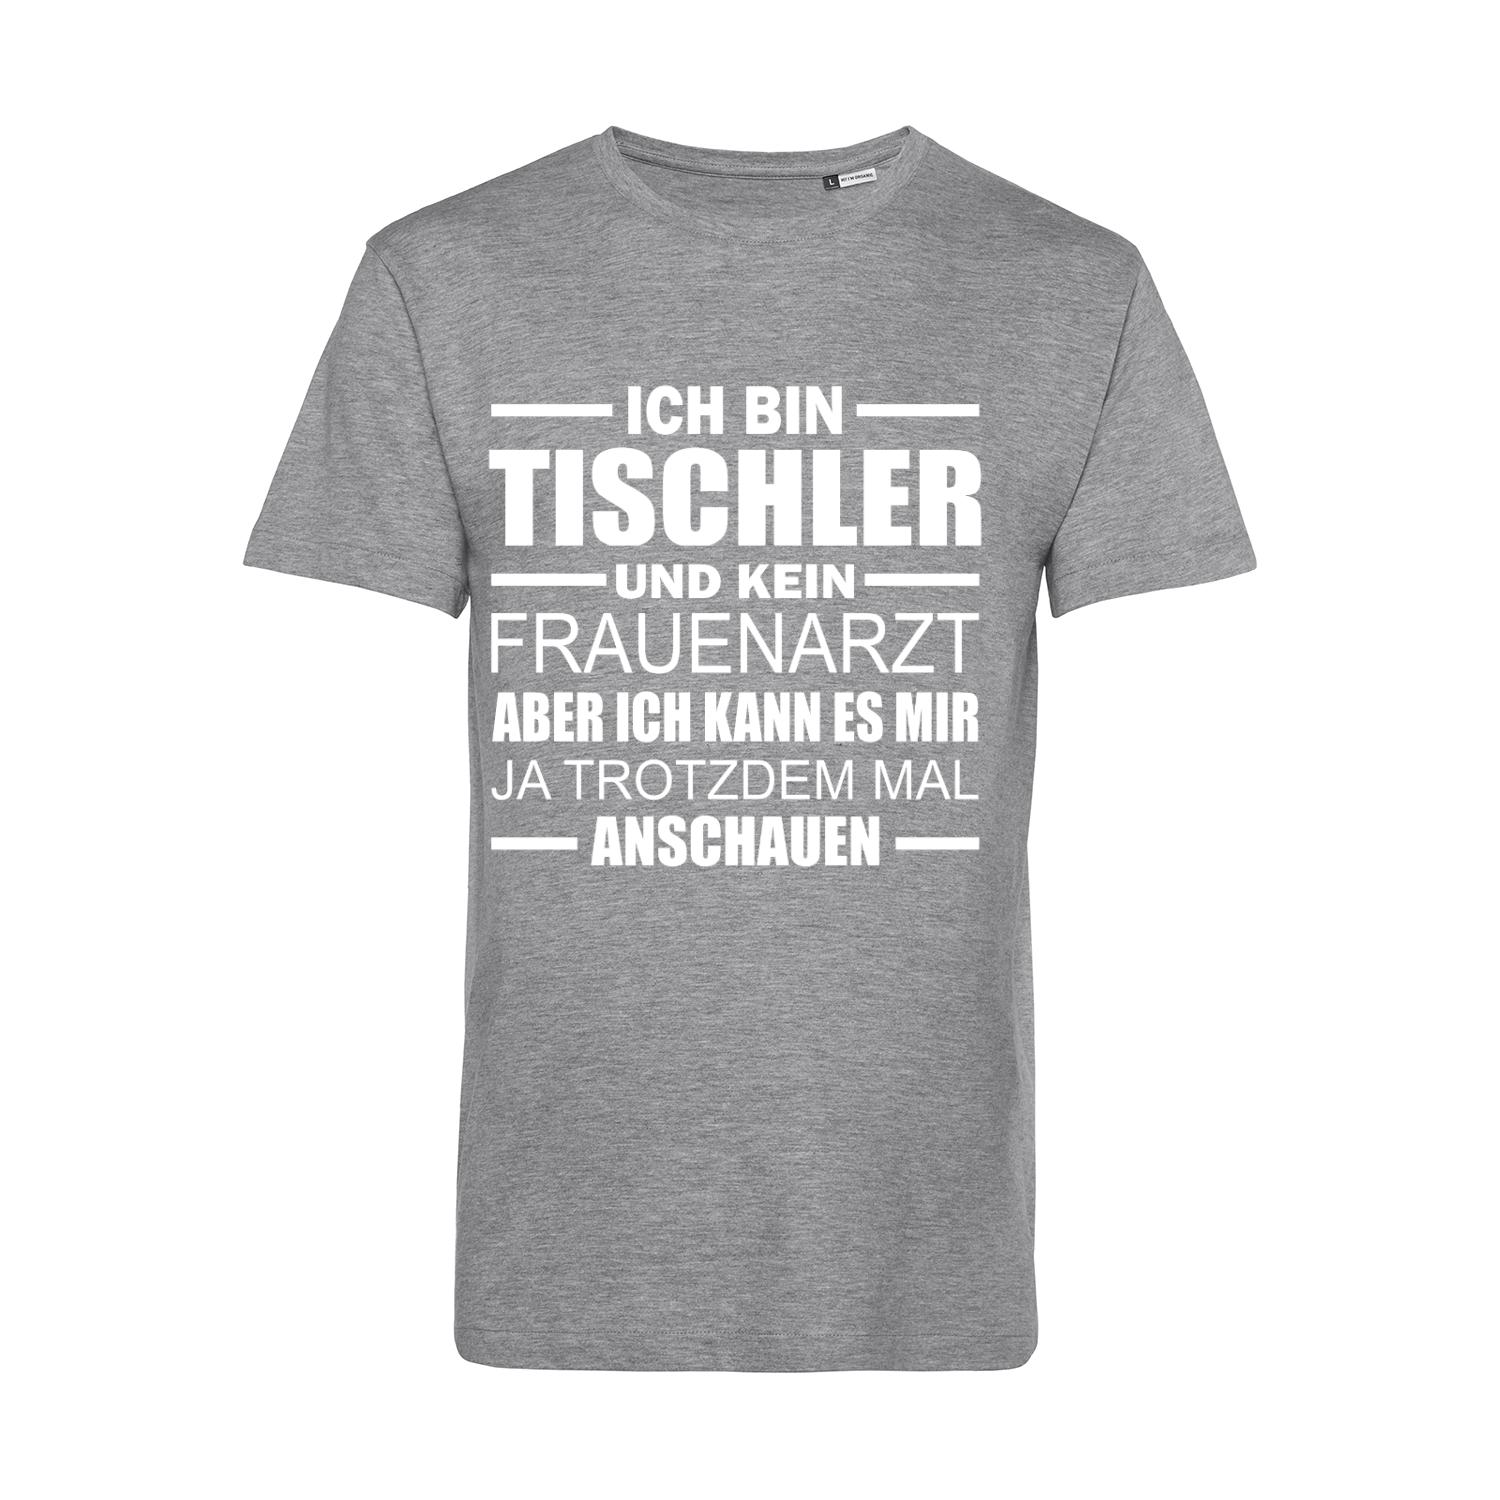 Nachhaltiges T-Shirt Herren Tischler - Kein Frauenarzt